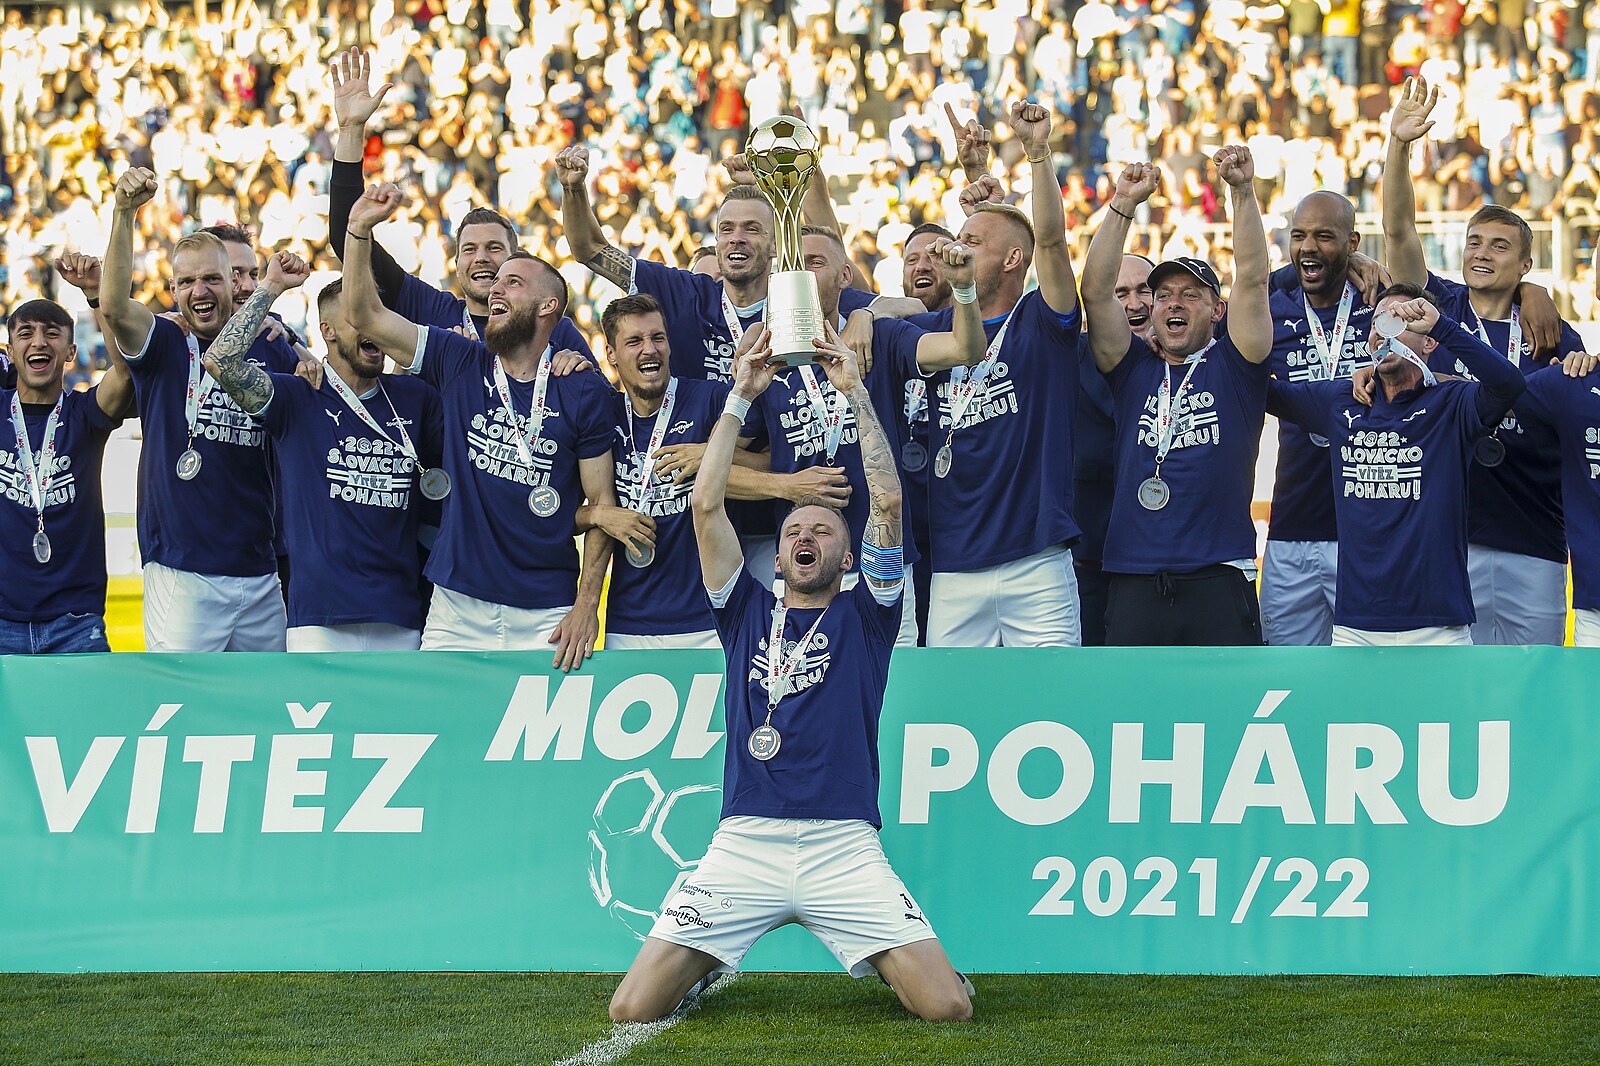 Slovácko - Sparta 3:1, finále rozhodli domácí za půli, závěr v nedůstojných kulisách - iDNES.cz